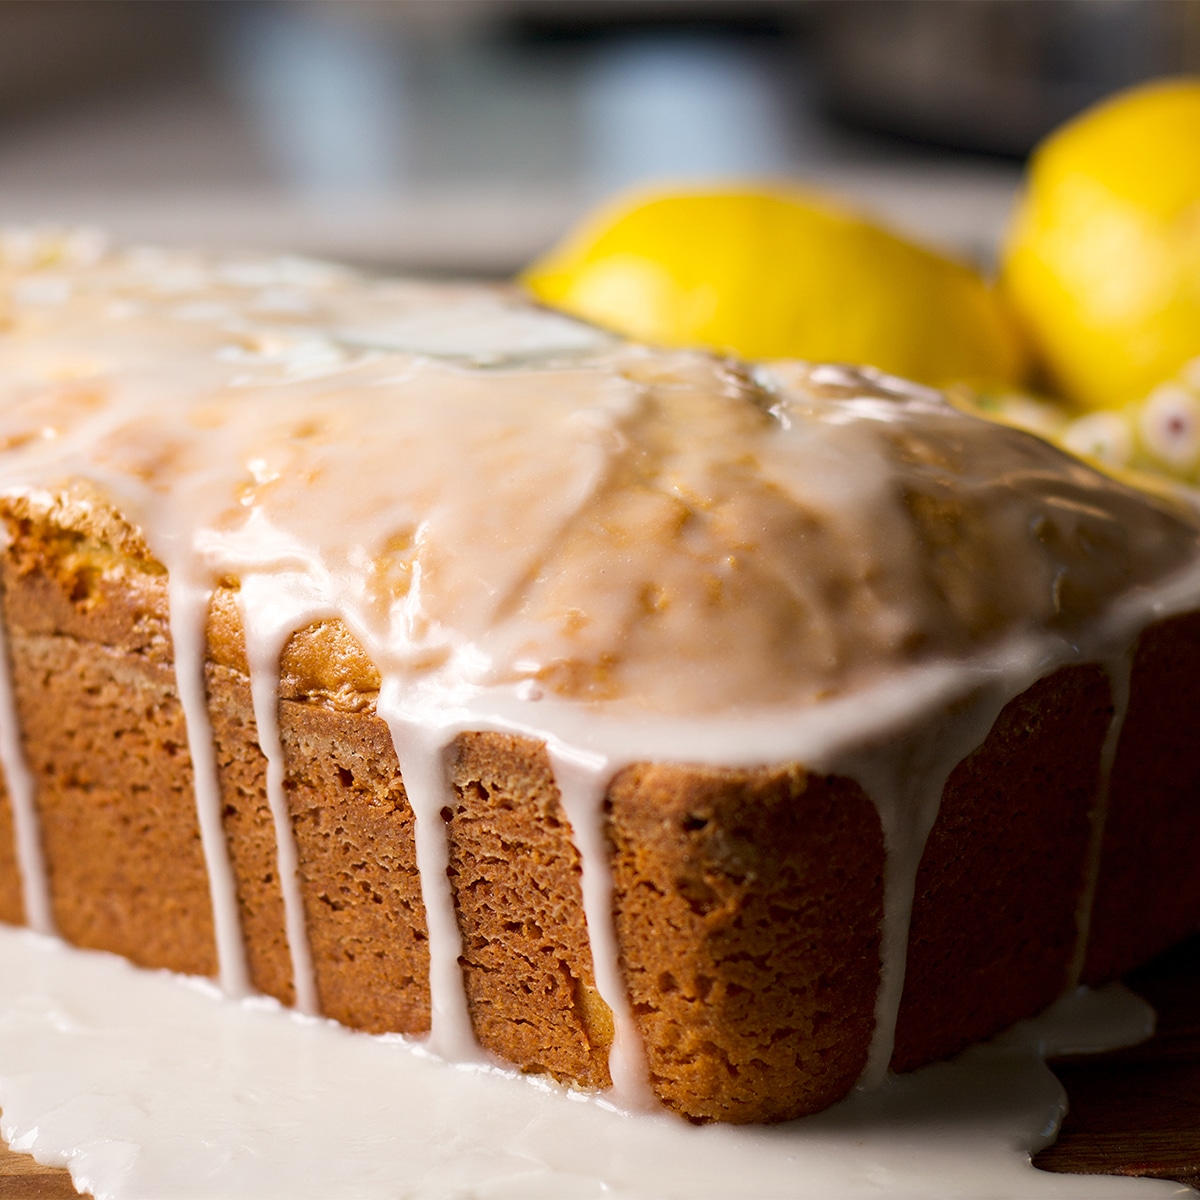 A lemon loaf cake covered in tart lemon glaze.